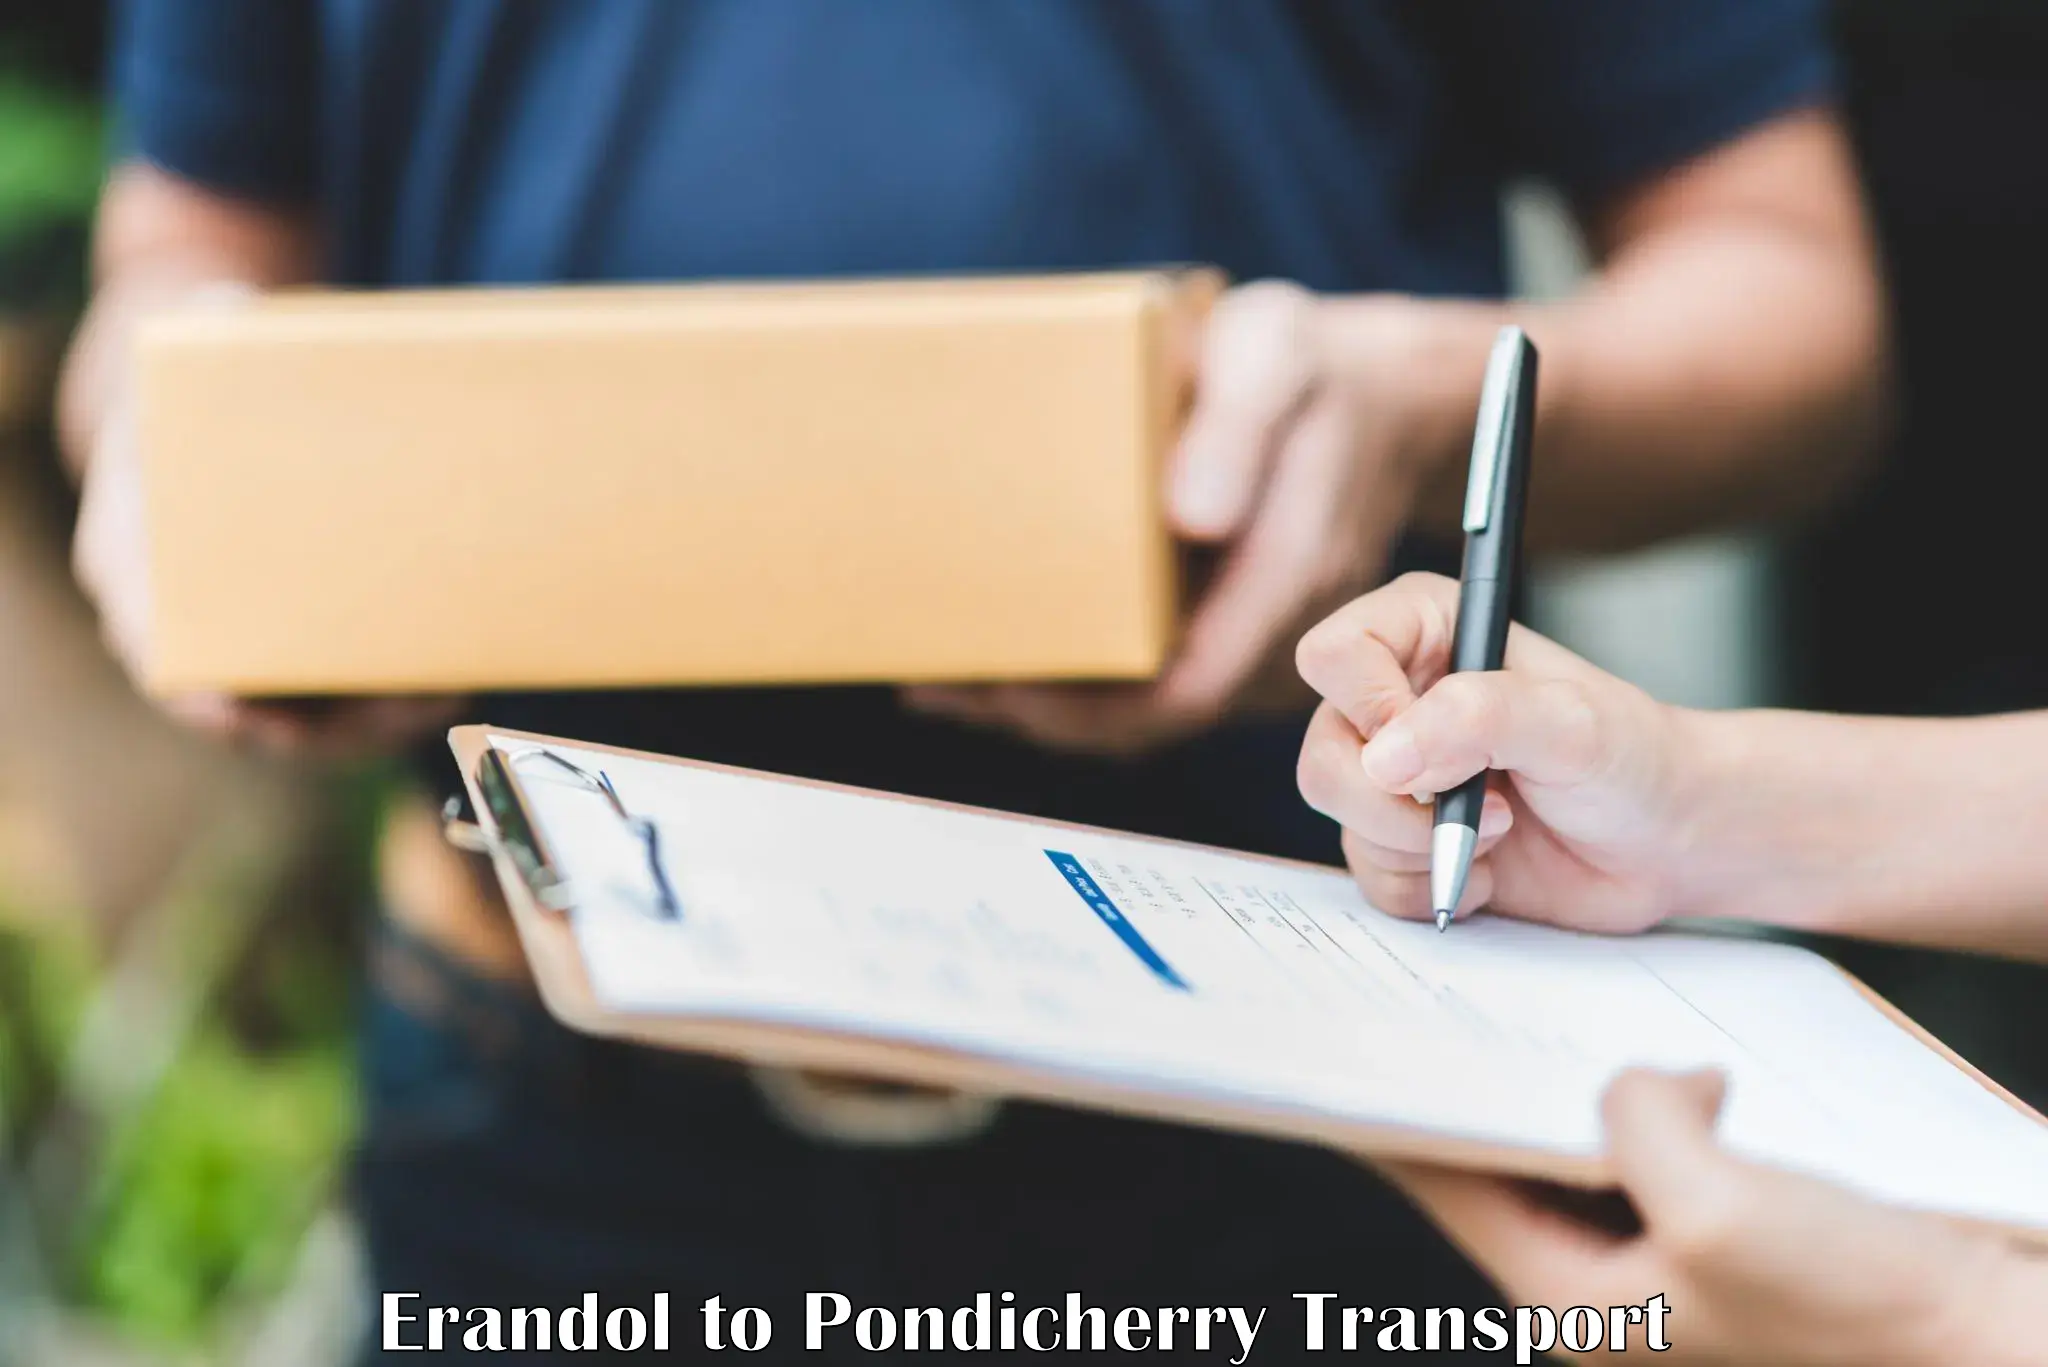 Online transport service Erandol to Pondicherry